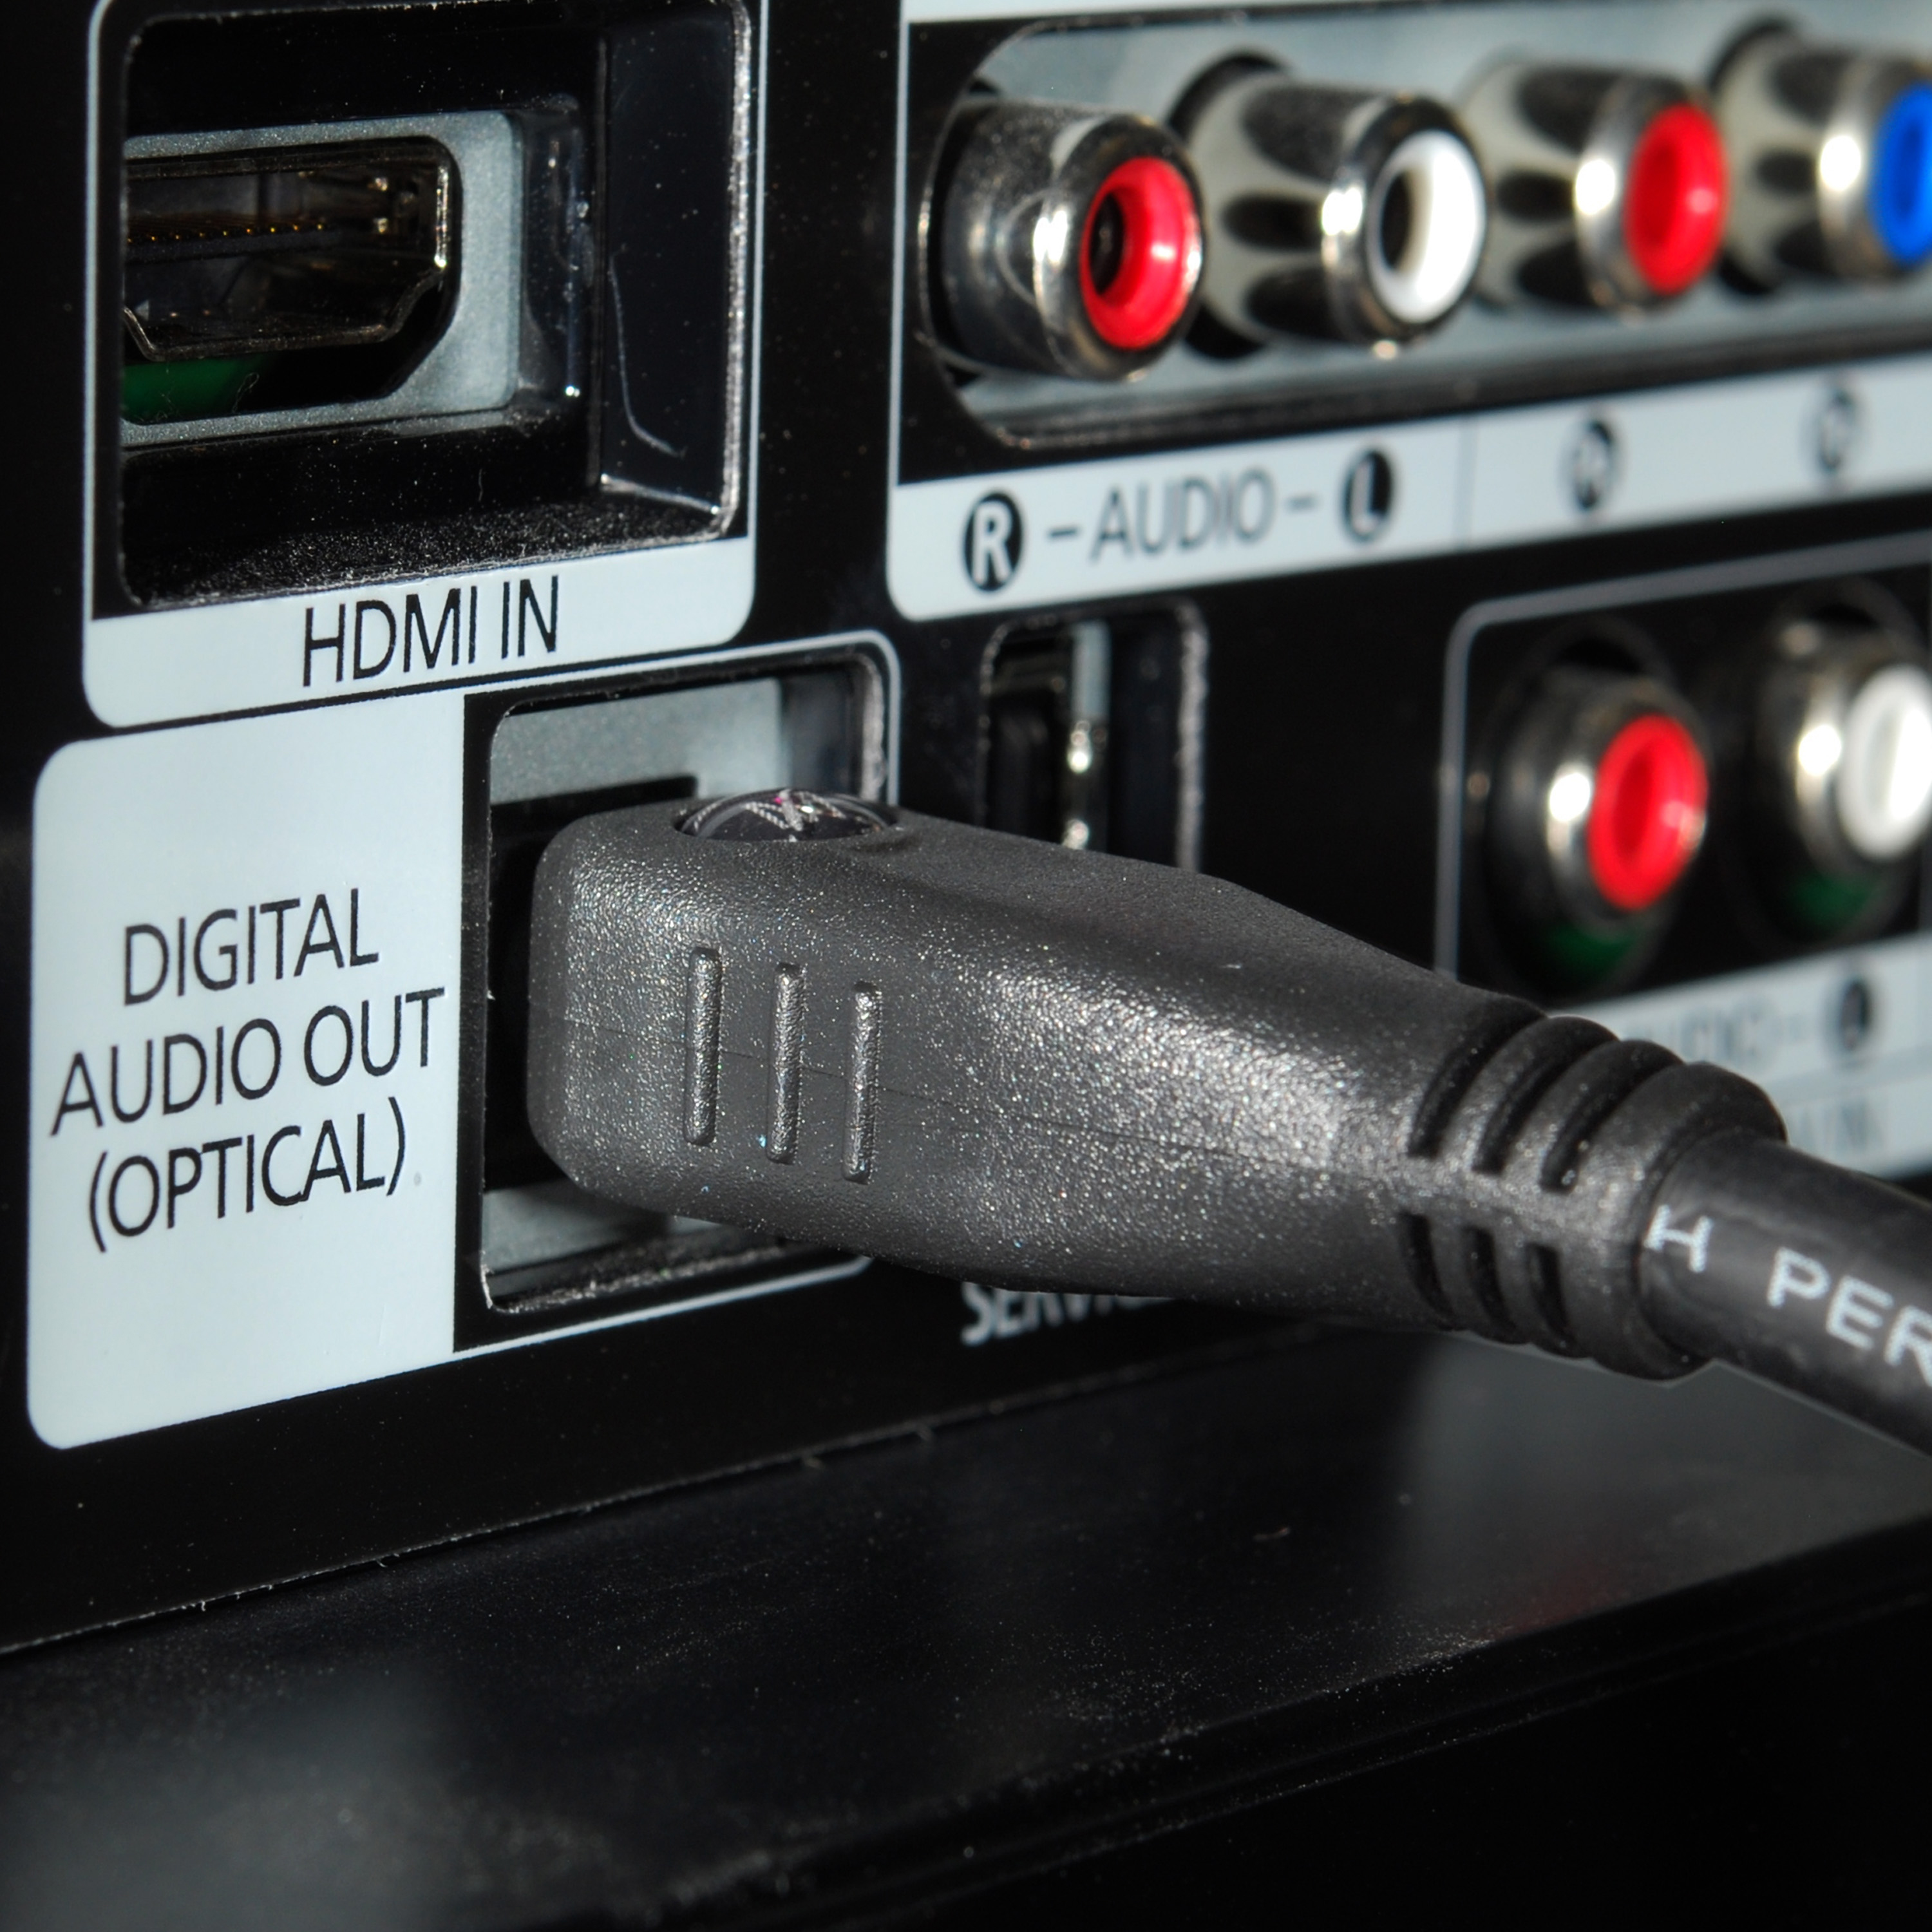 Звук через оптический кабель. Провод Optical Digital Audio. Optical Digital Audio out кабель 5.1. Провод Digital Audio out Optical. Провод оптикал диджитал аудио.